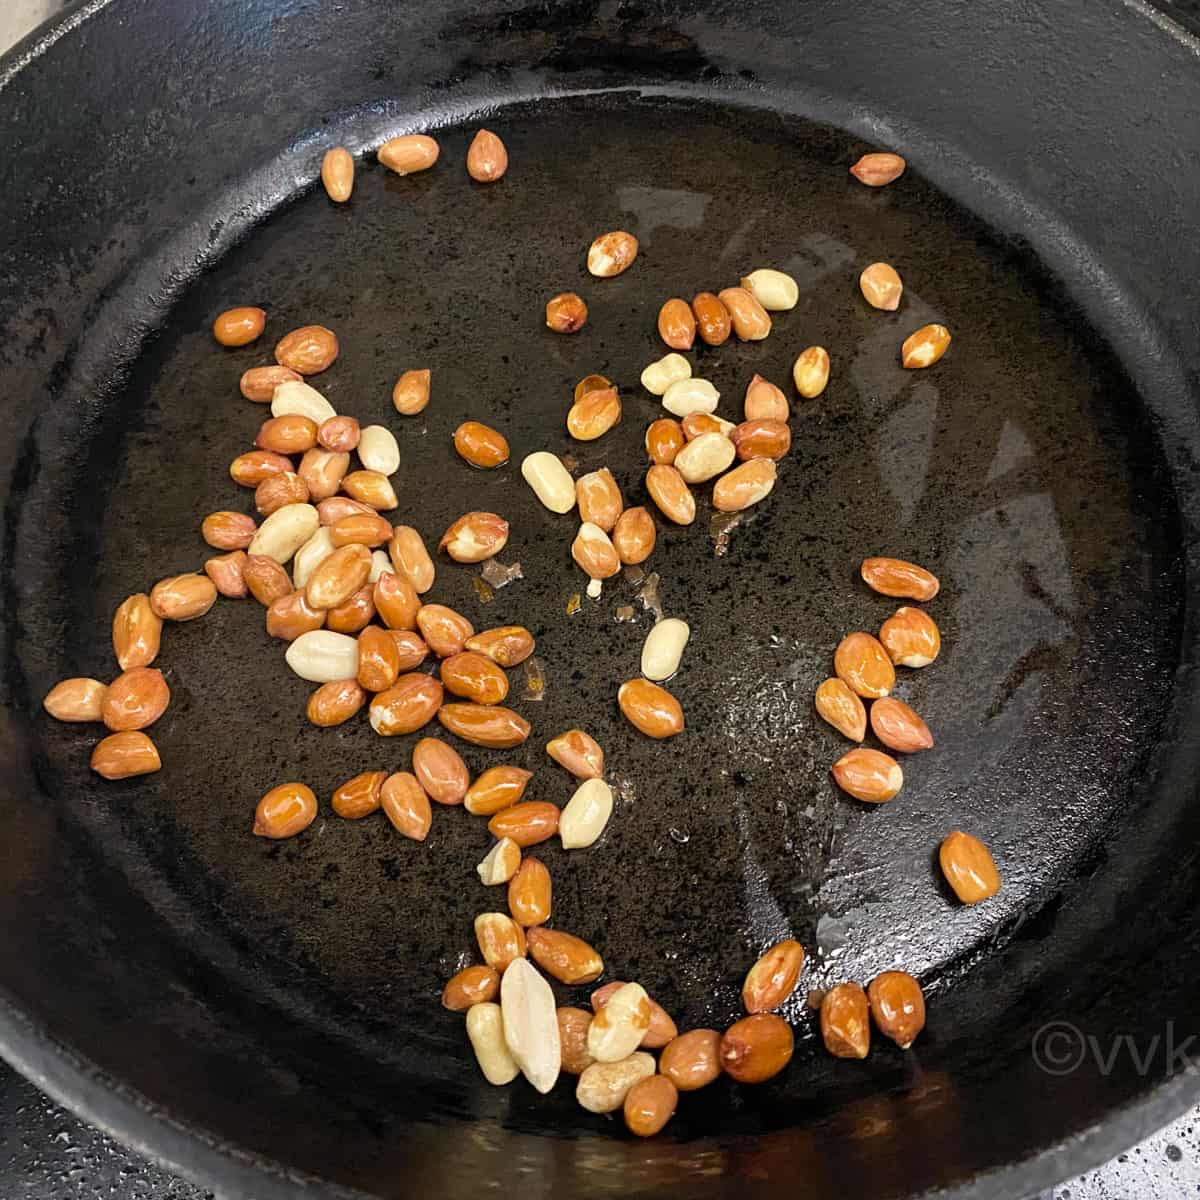 roasting peanuts